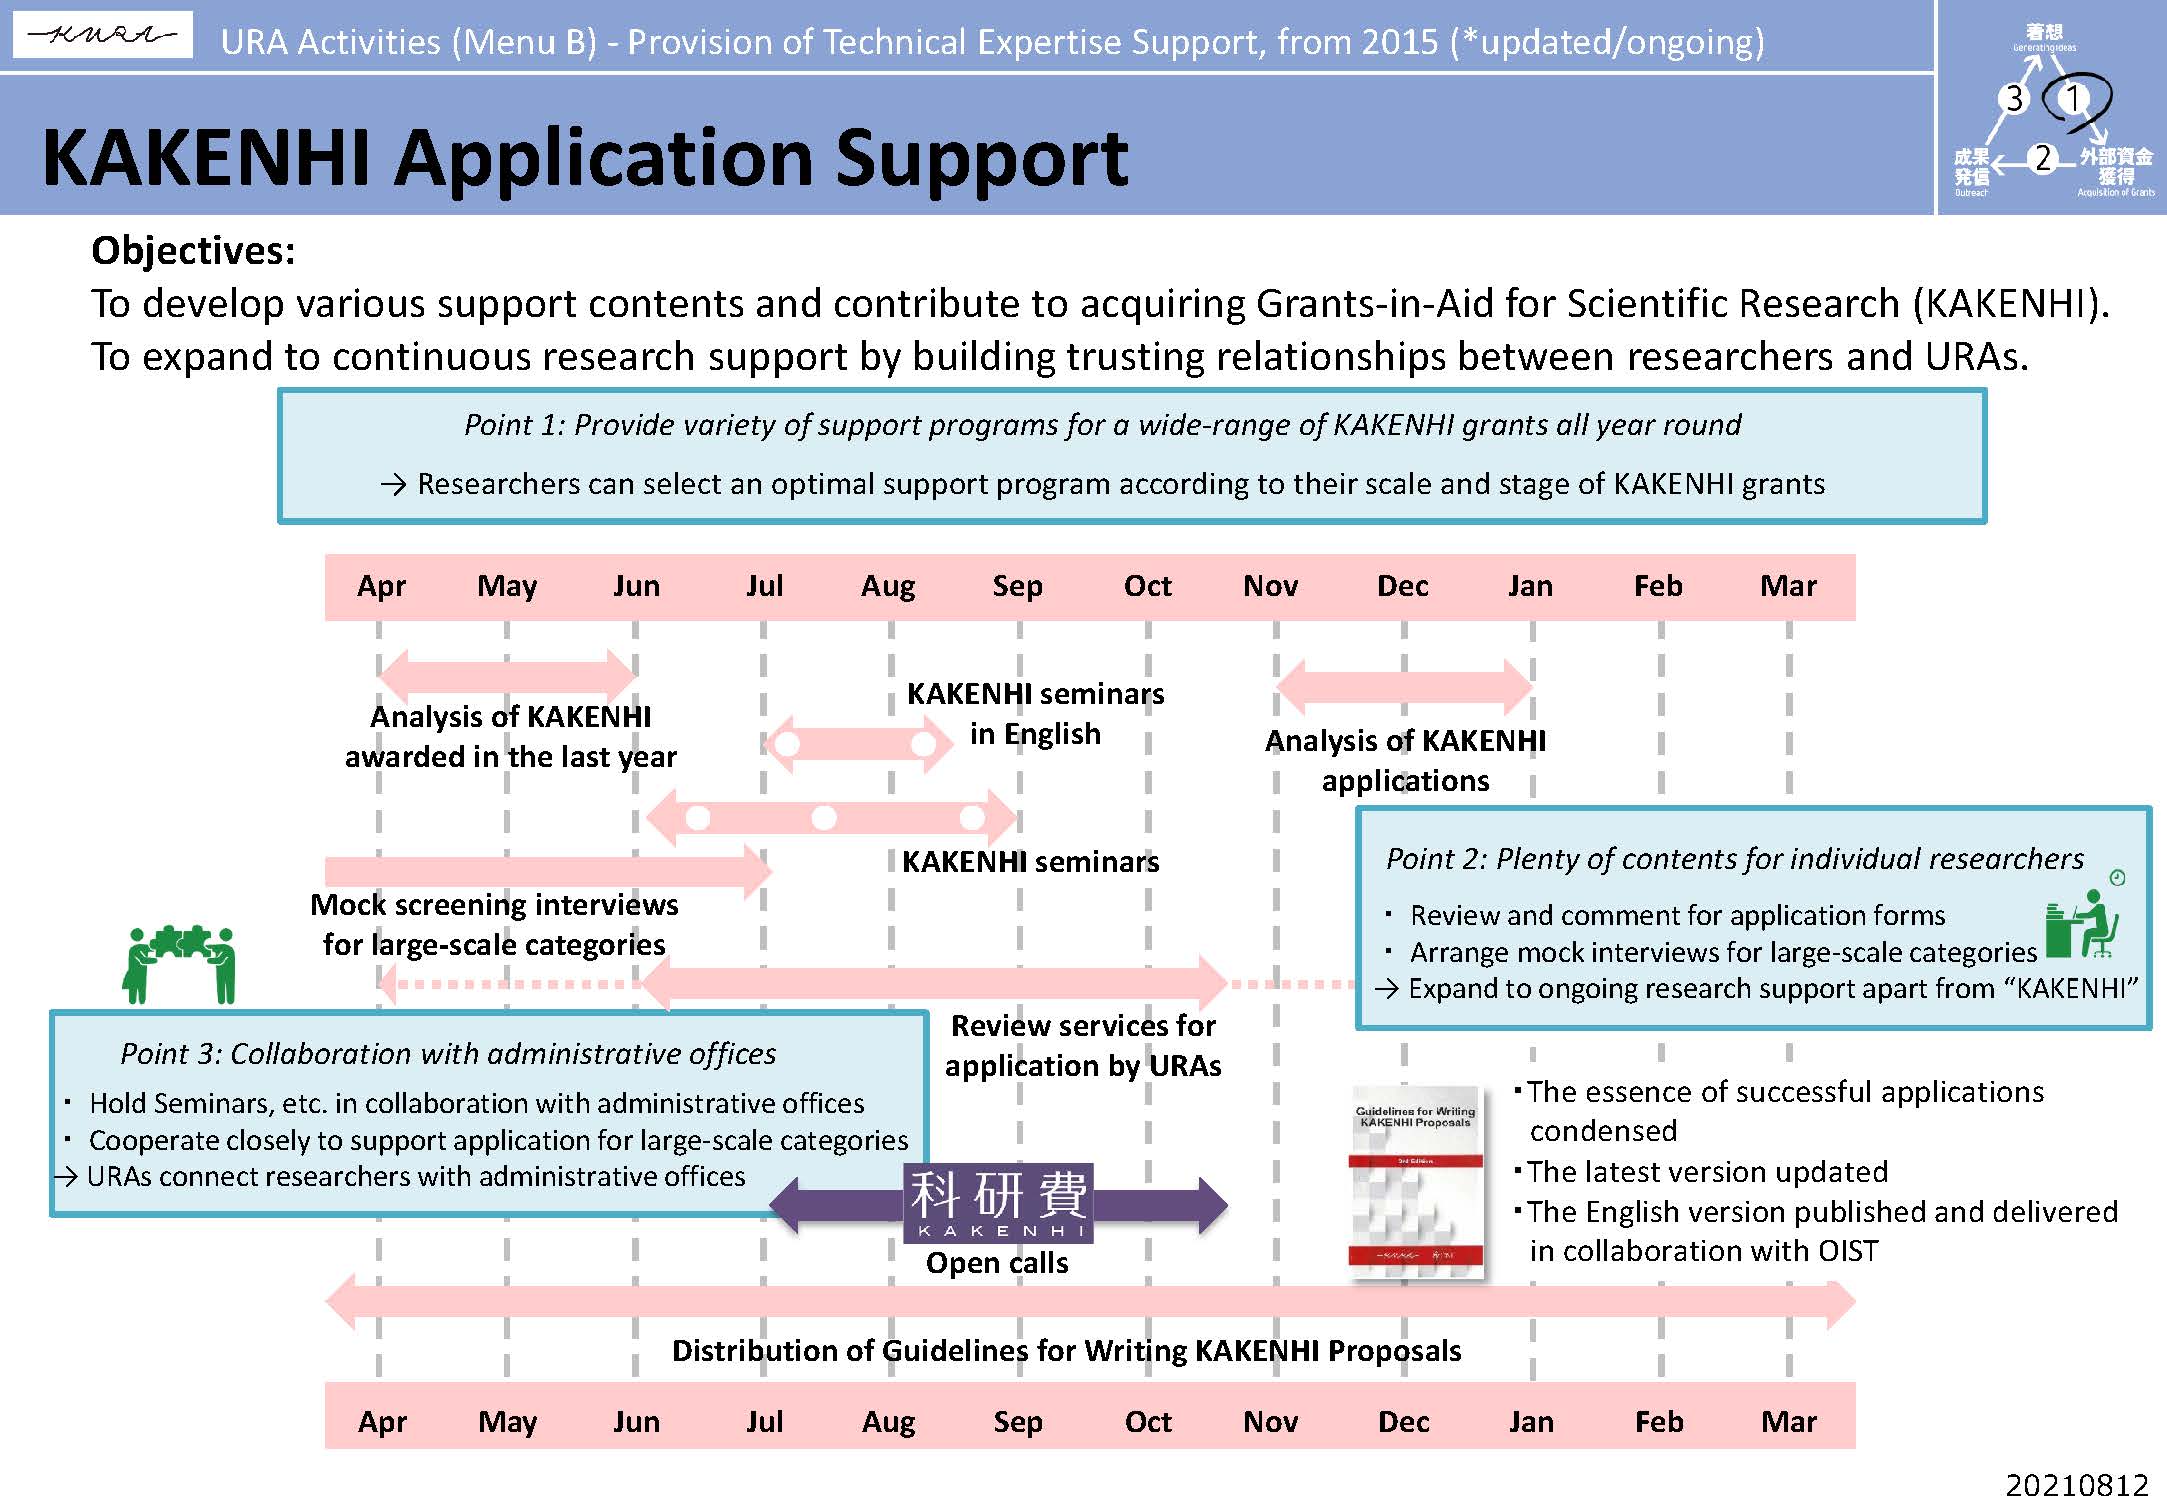 KAKENHI Application Support Task Force